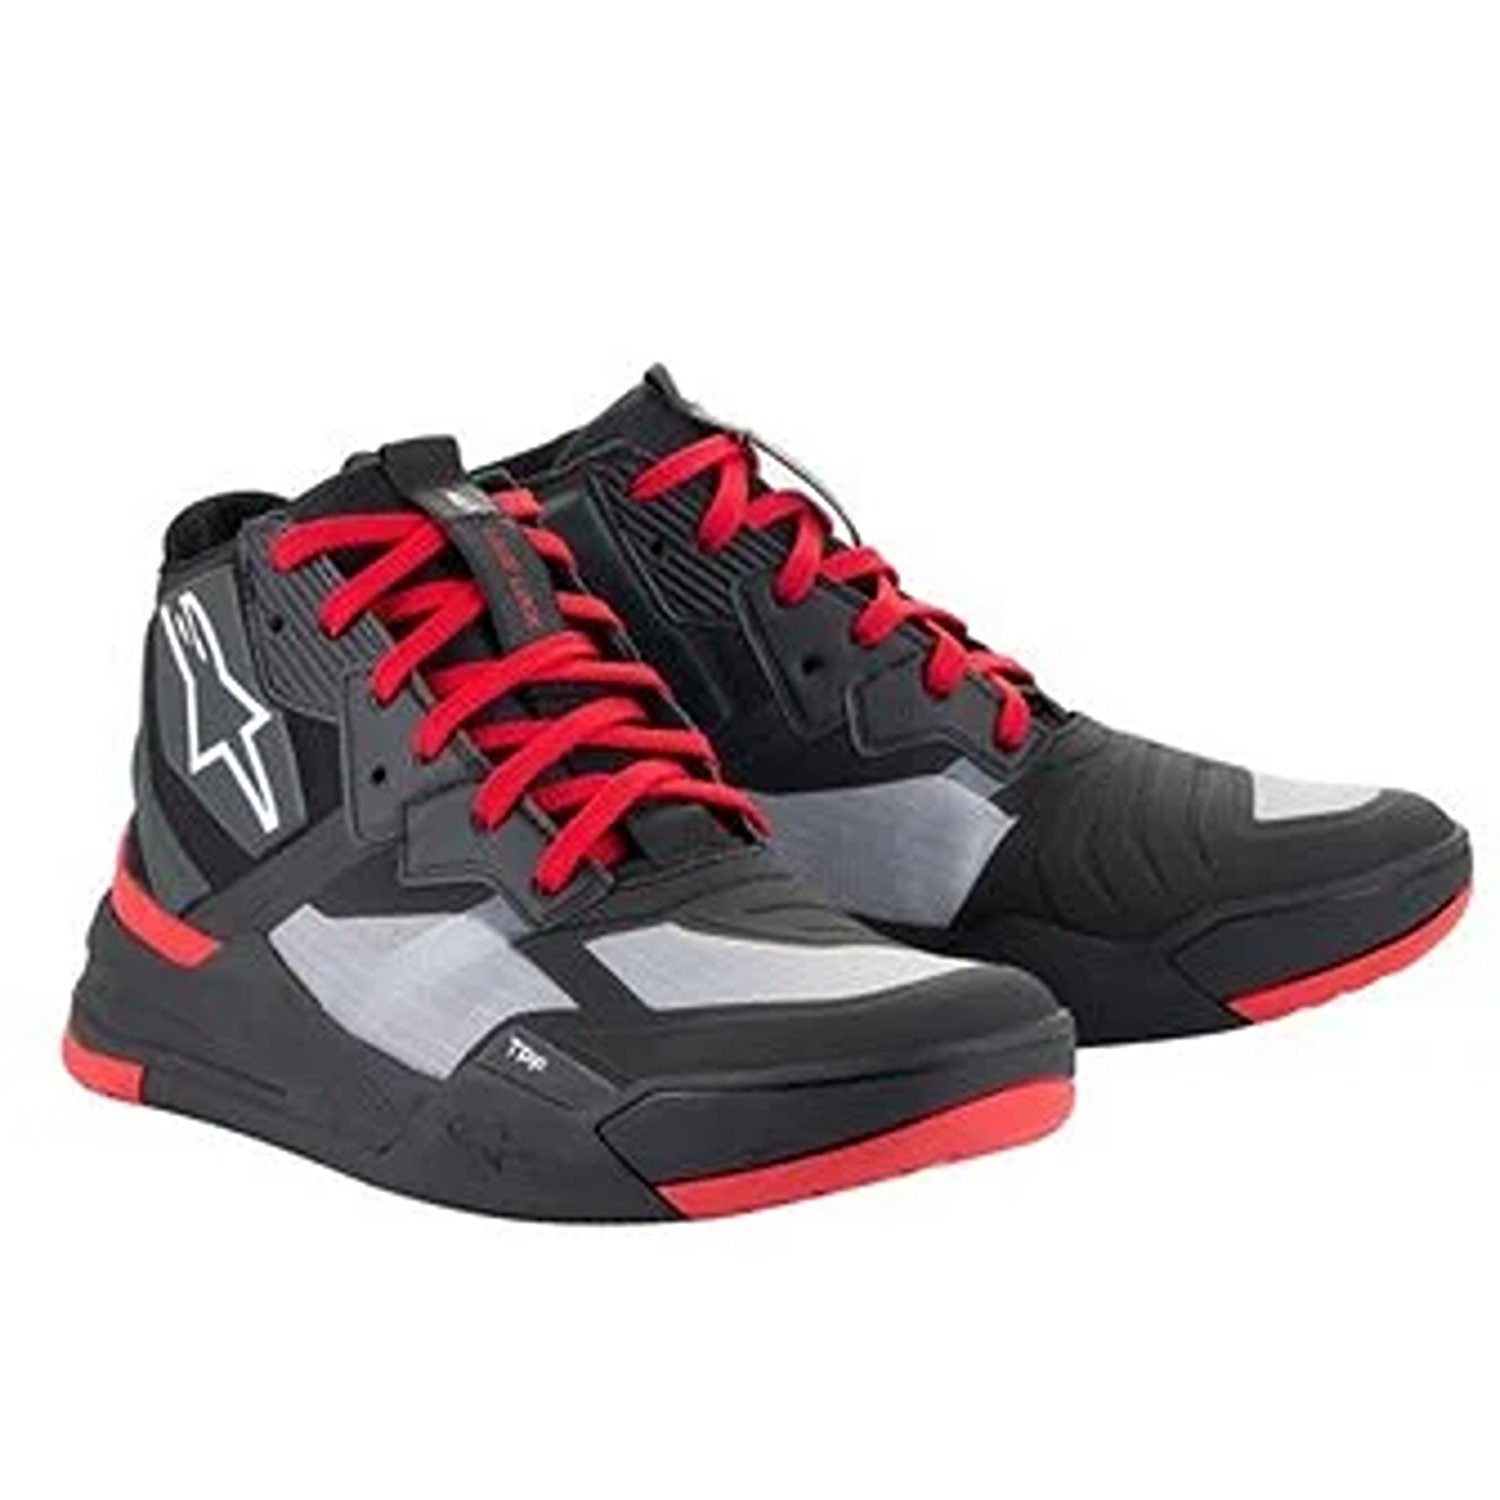 Image of Alpinestars Speedflight Shoes Black Bright Red White Größe US 125